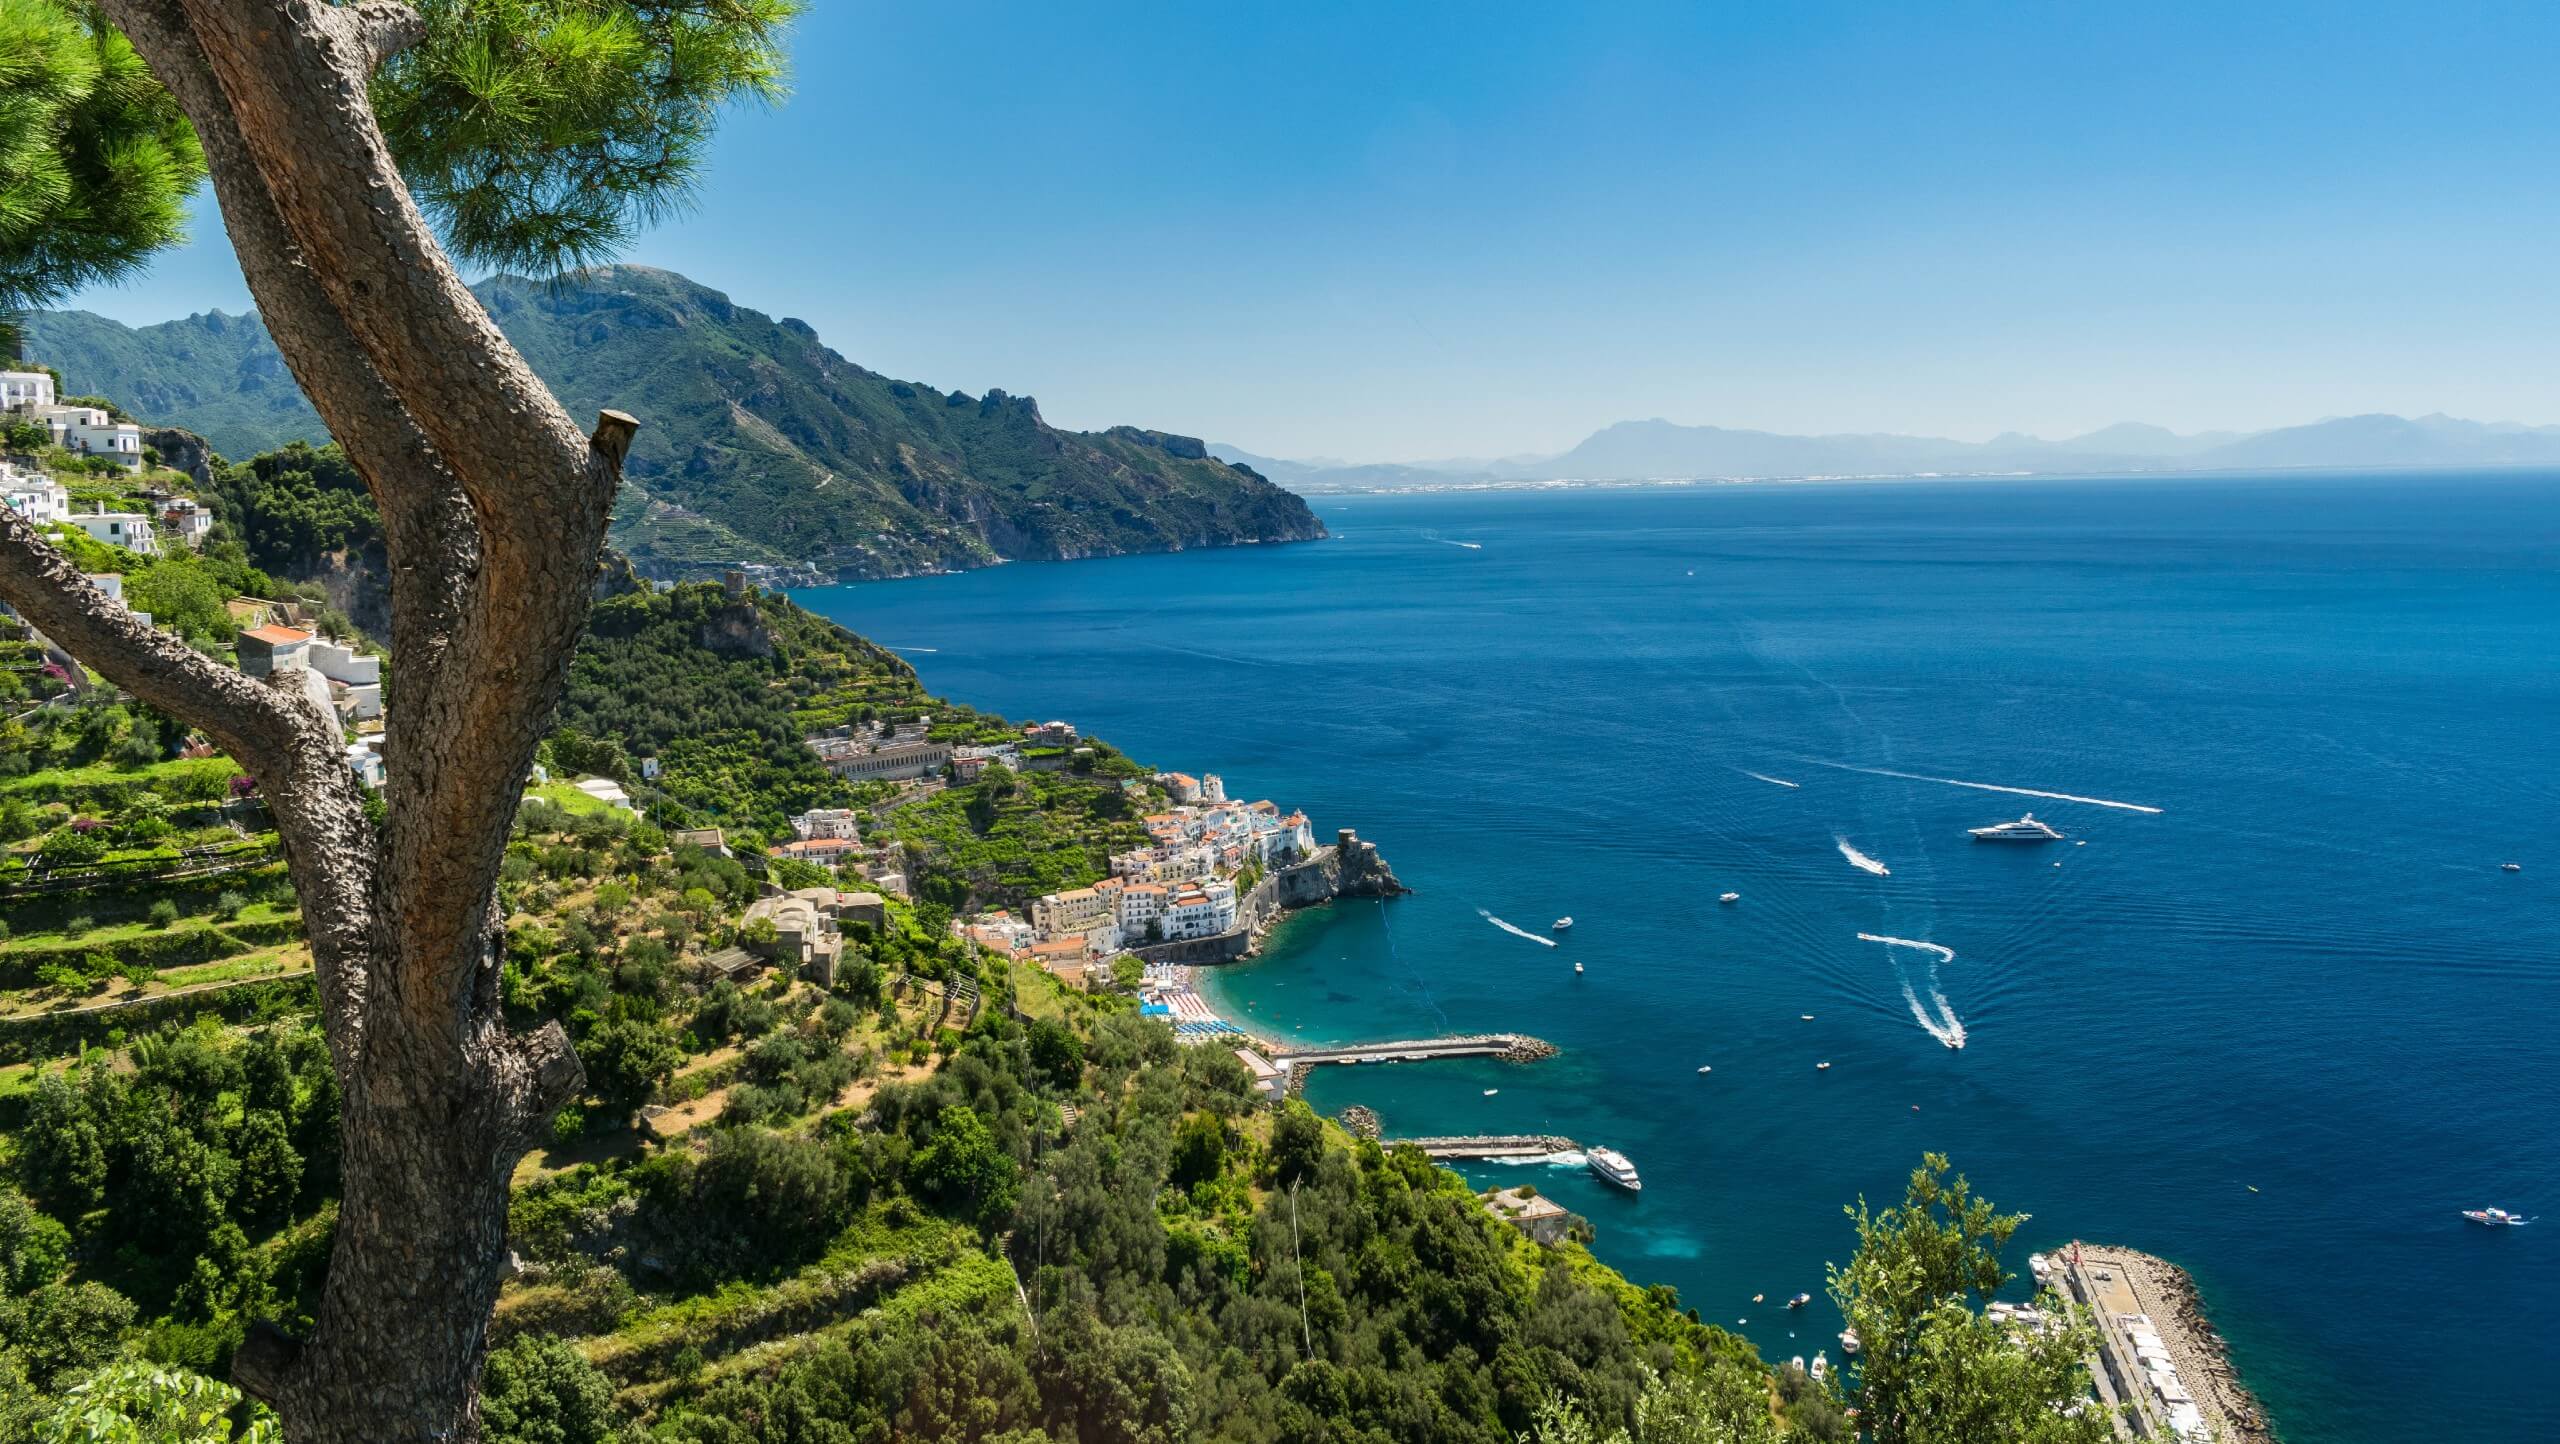 Campania and Amalfi Coast Walking Tour